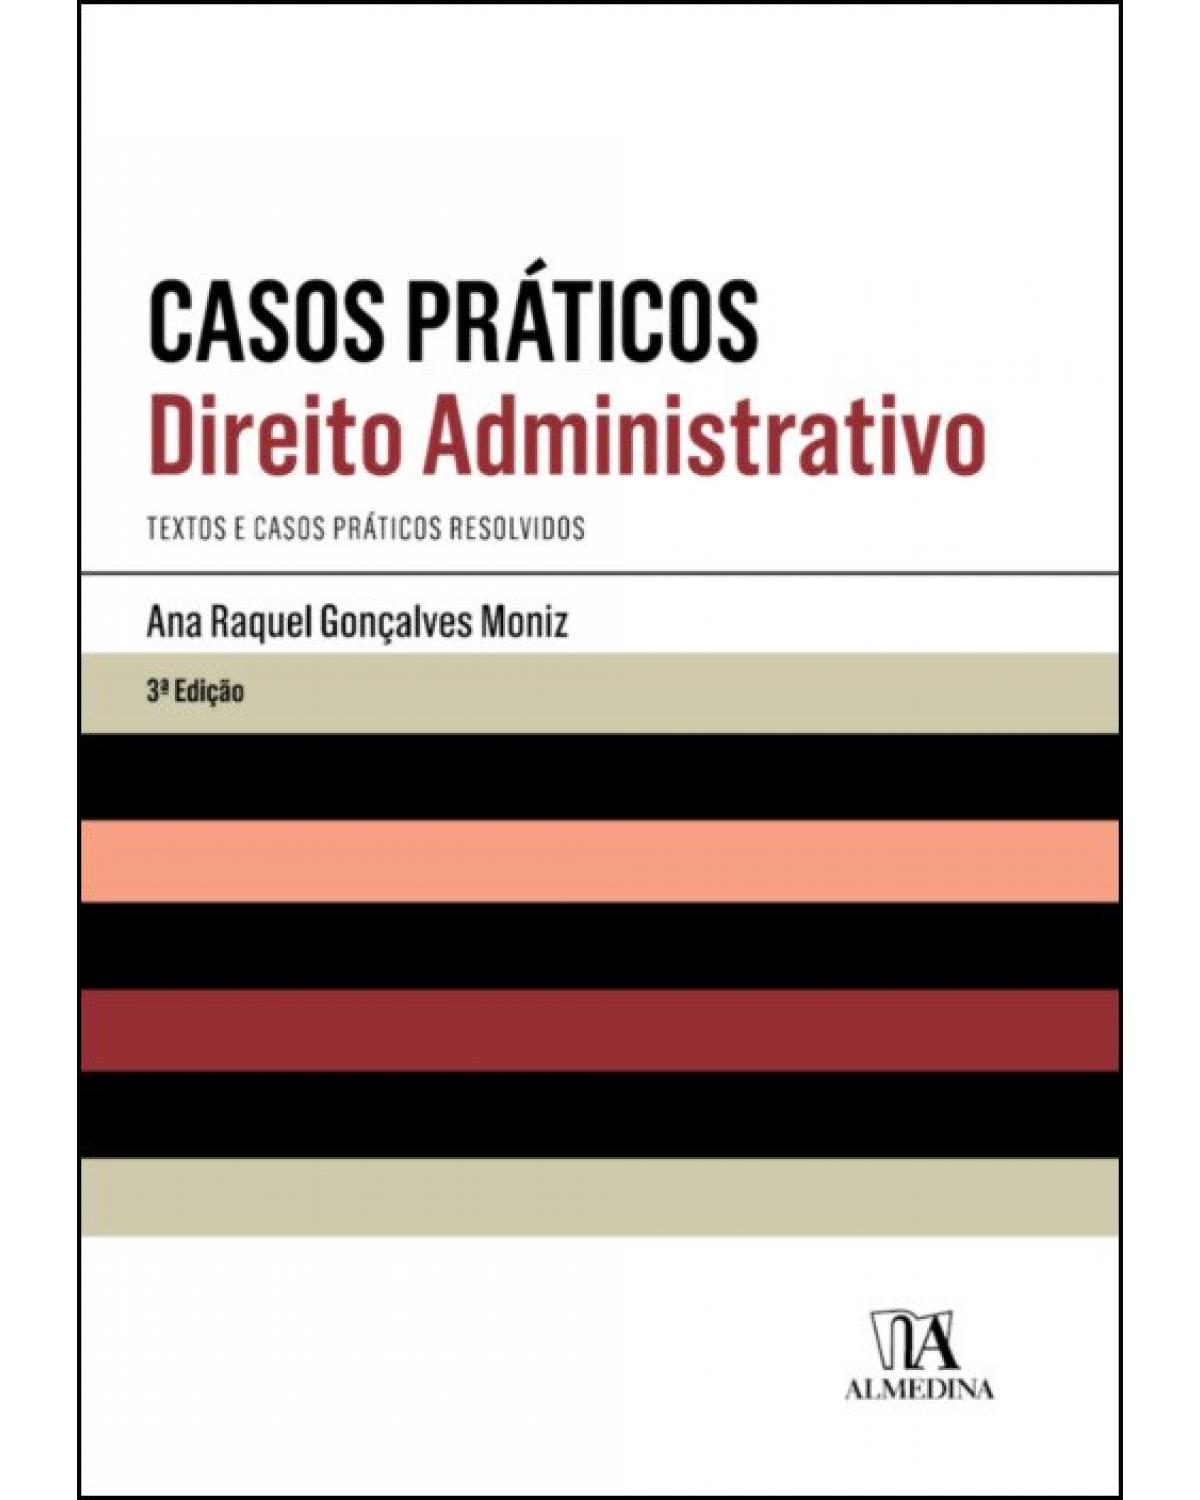 Casos práticos: Direito administrativo - 3ª Edição